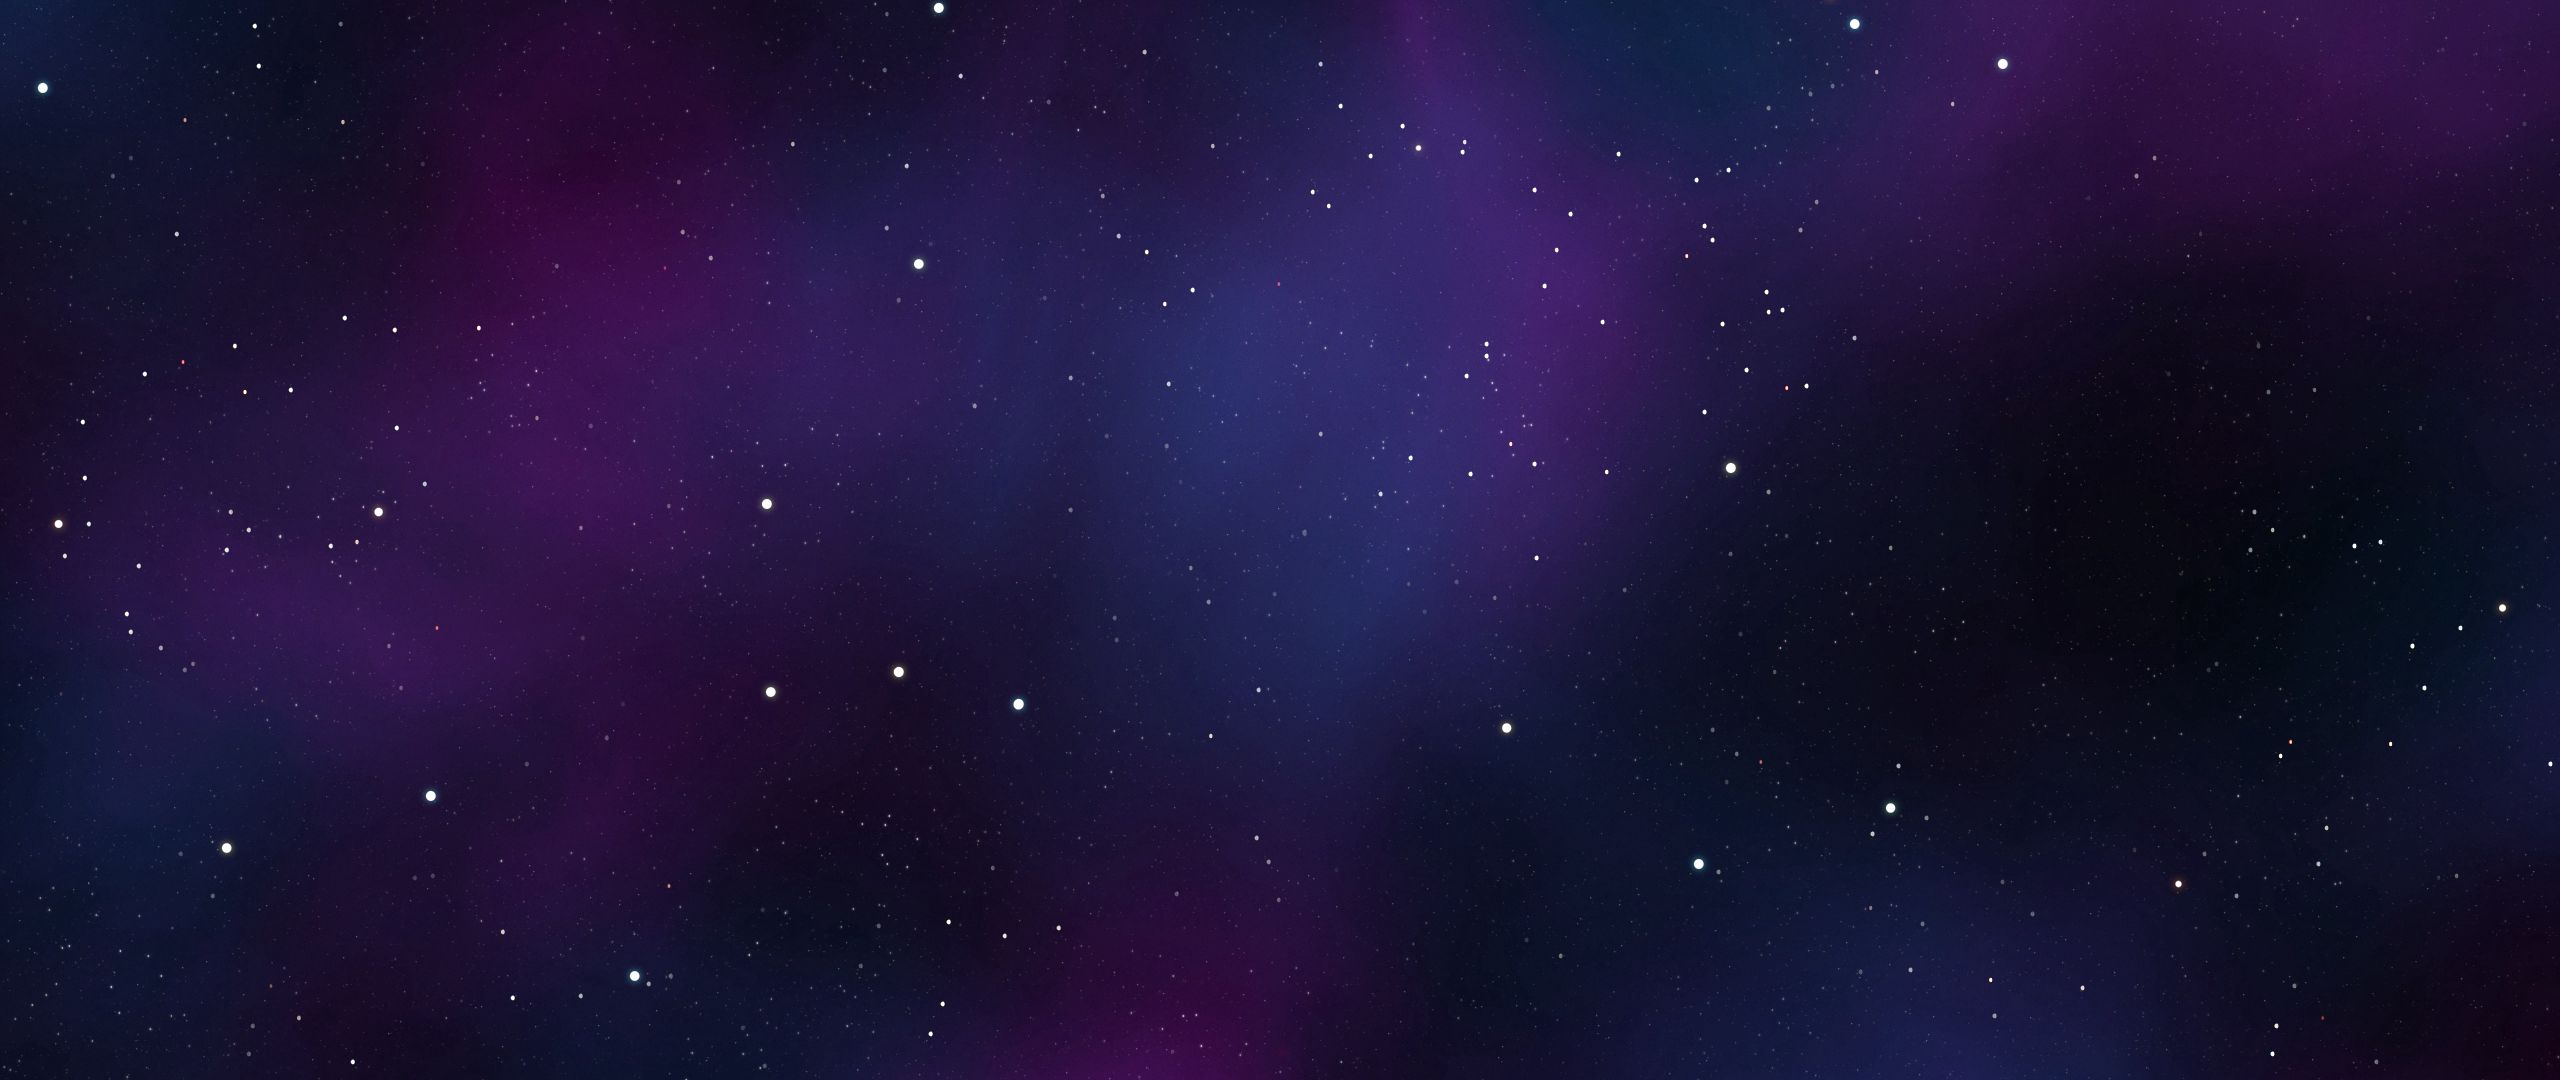 1024 x 576 для ютуба. Фон для шапки. Сине фиолетовый фон. Фиолетовый космос. Космос звезды.